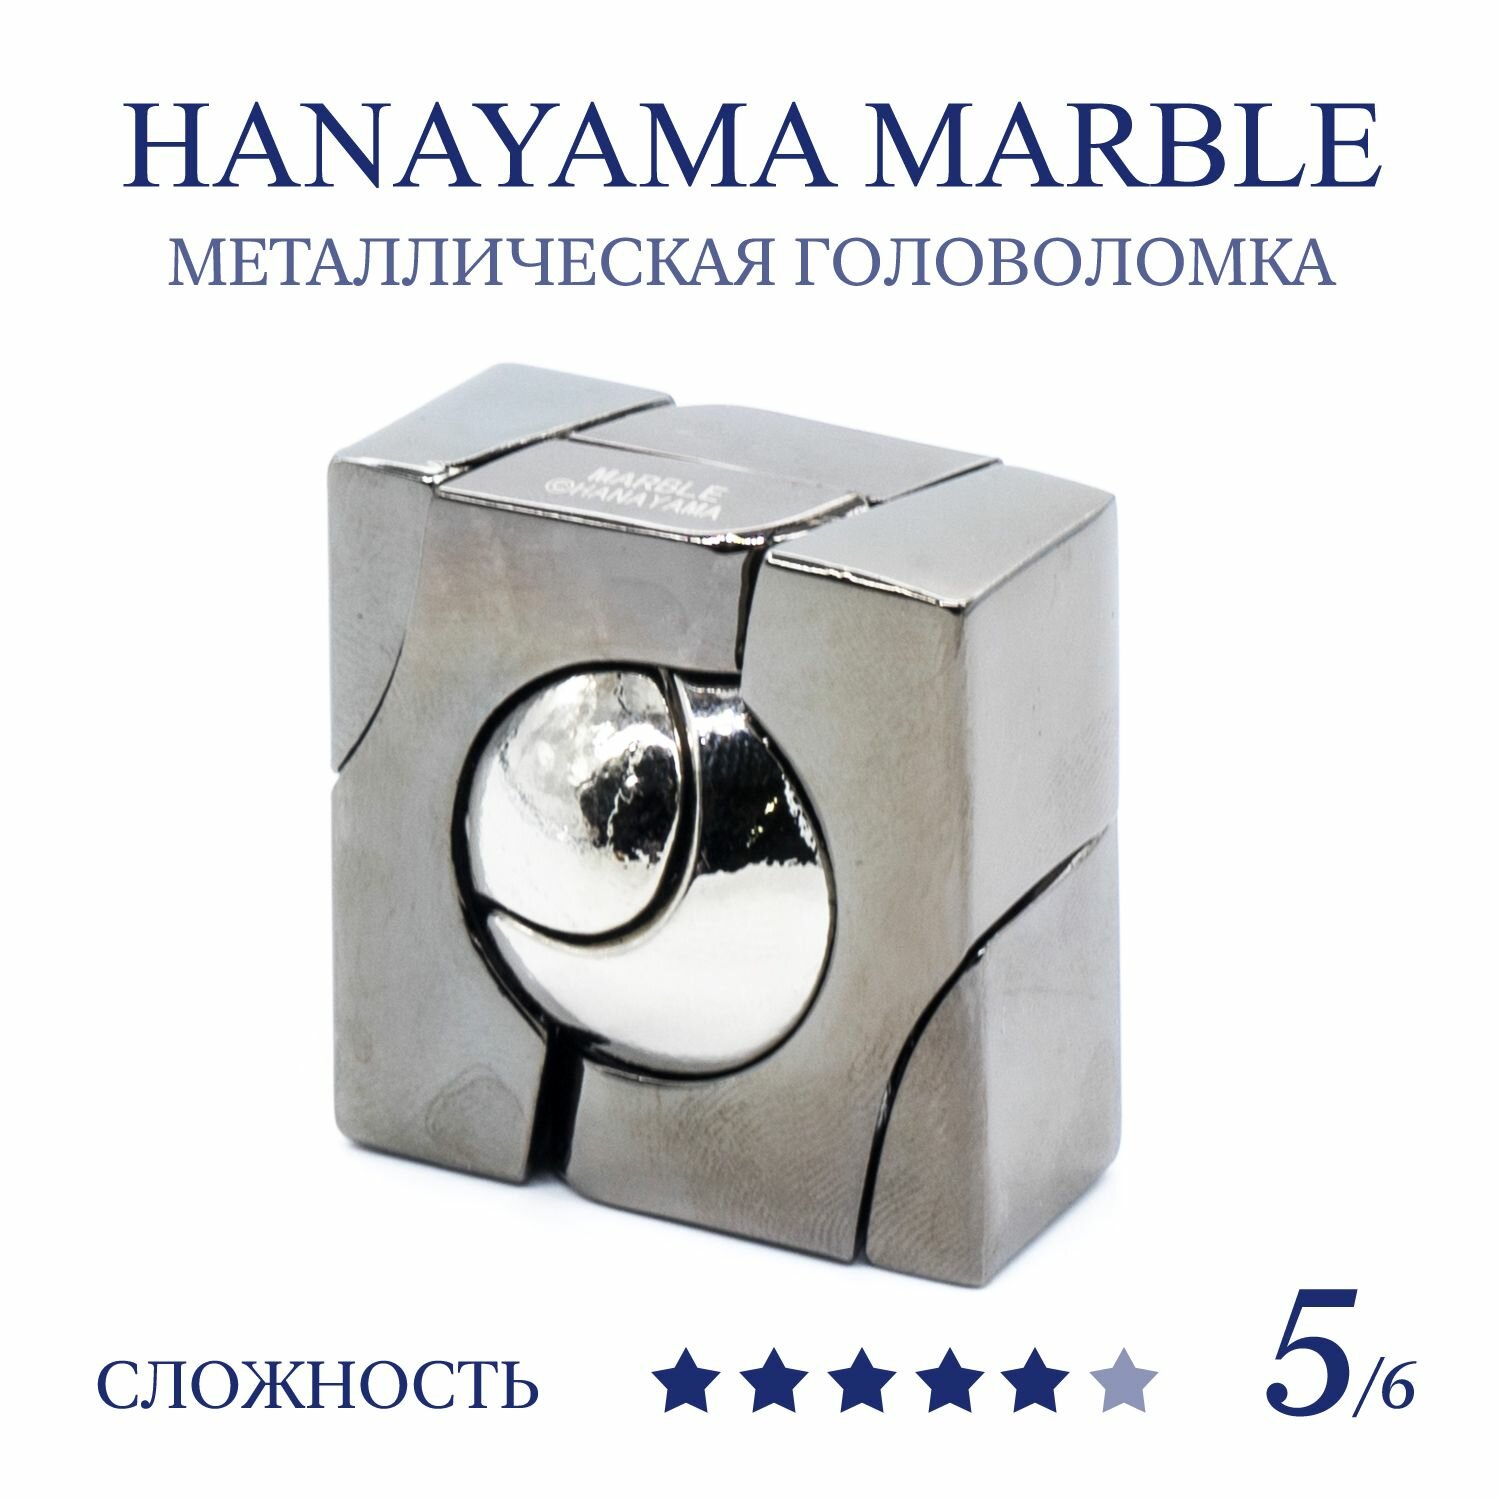 Головоломка Hanayama Huzzle Cast Marble 5 ур. / Ханаяма мрамор